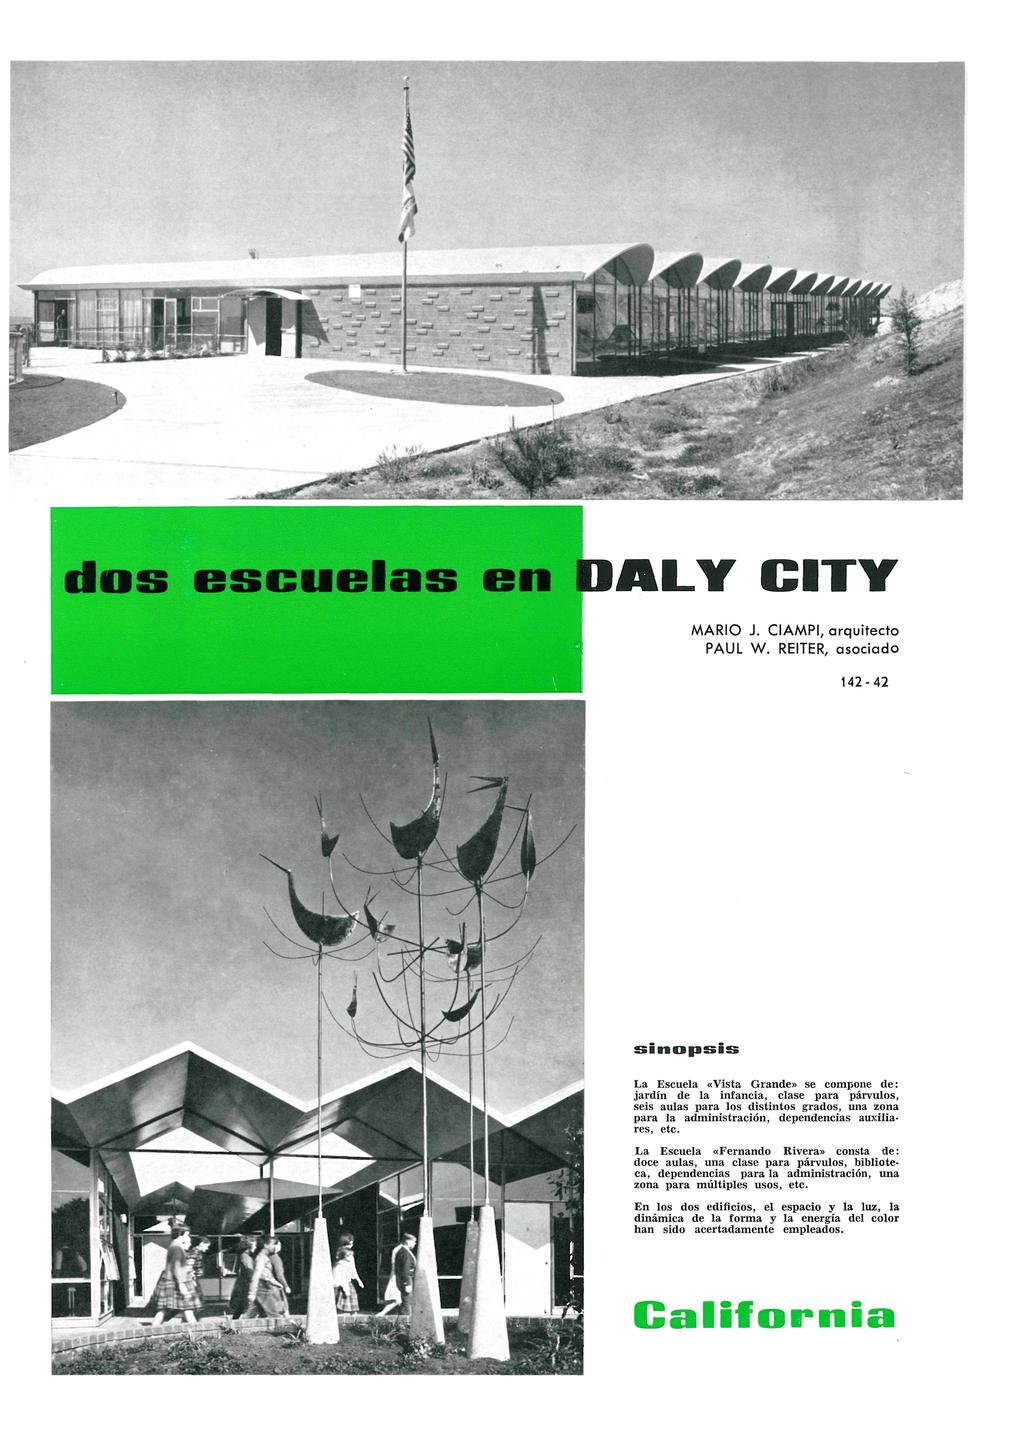 Informes de la Construcción Vol. 18, nº 174 Octubre de 1965 ALY CITY MARIO J. CIAMPI, arquitecto PAUL W.